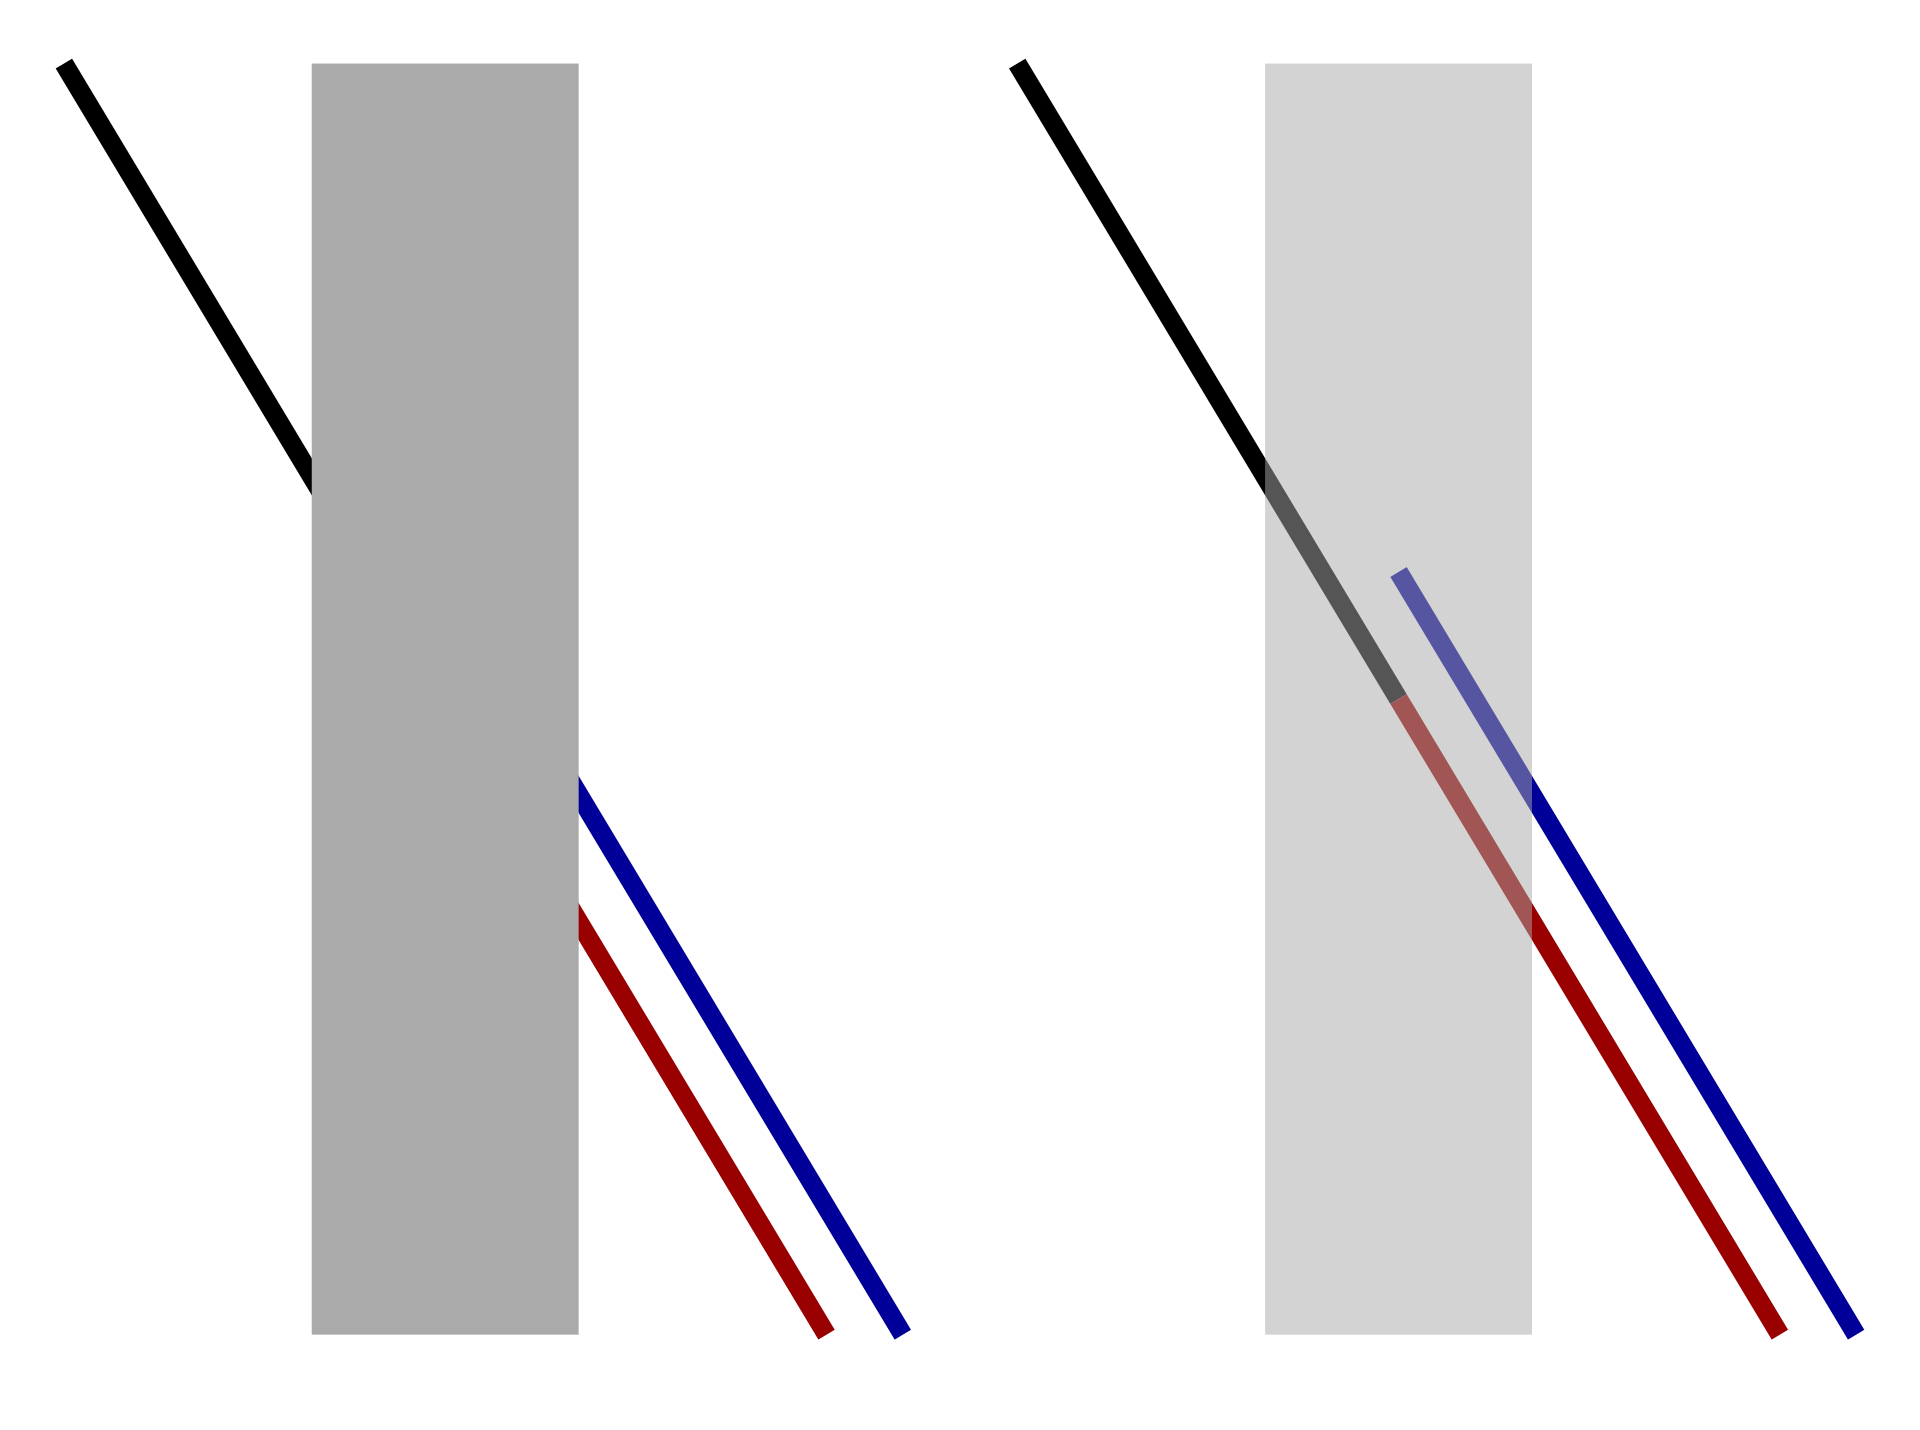 Ilustracja przedstawia dwa szare pionowe prostokąty. Na skos przez prostokąty biegną dwie równoległe do siebie linie. Jeden z prostokątów ma po lewej stronie fragment czarnej linii, a po prawej czerwonej i niebieskiej, co sprawia wrażenie, jakby niebieska linia przechodziła w czarną linię. Na dugim prostokącie pokazano, że czerwona linia łączy się z czarną, a niebieska kończy bieg w połowie prostokąta.  przykrywa środek skośnie położonej linii, w efekcie czego wydaje się, że początek i koniec linii nie leżą na jednej prostej.